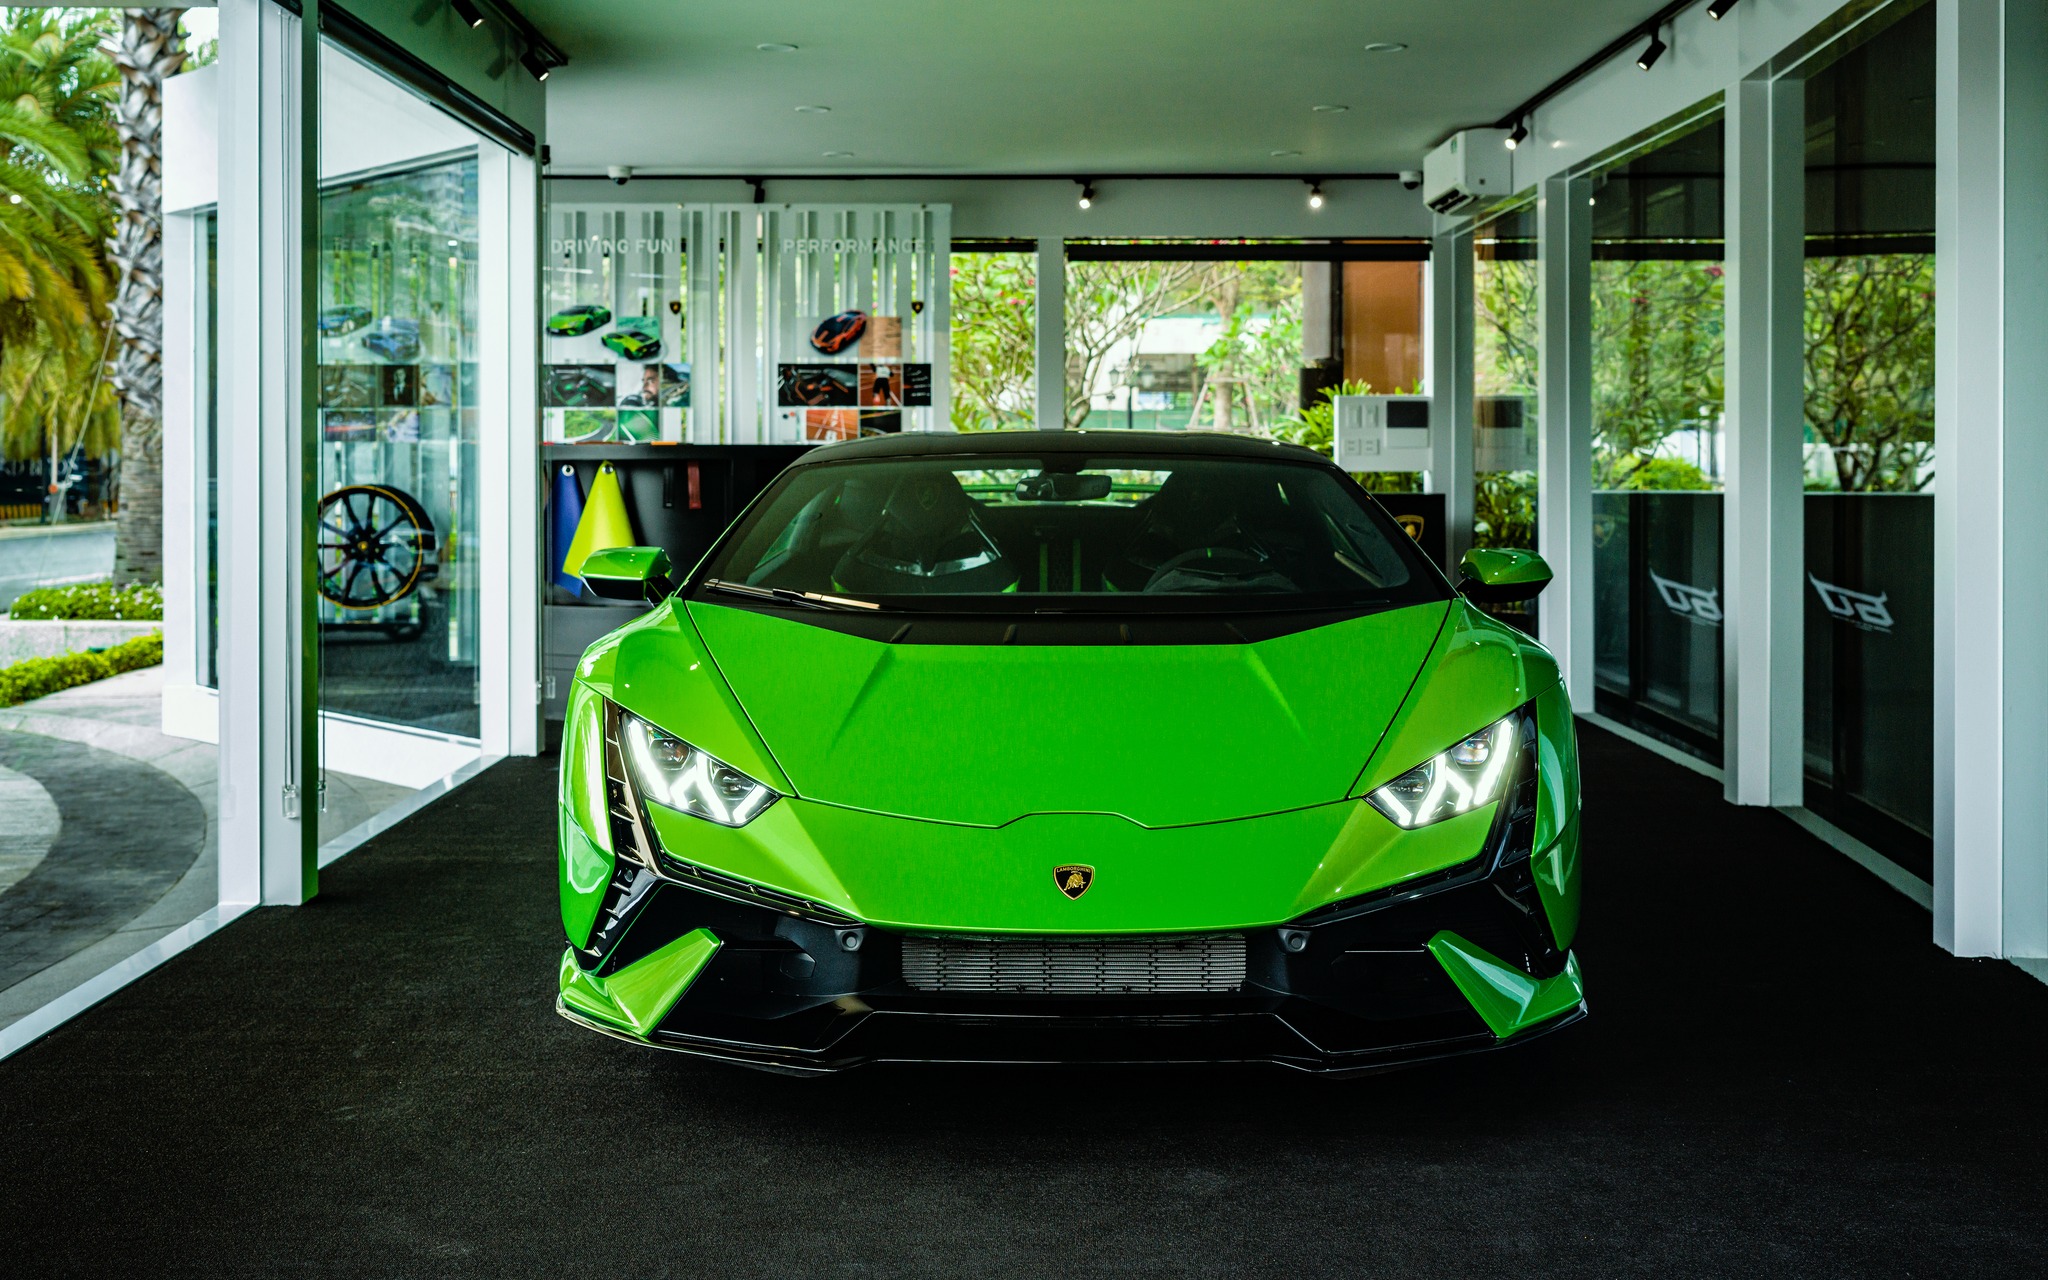 在 Grand Marina, Gallery 欣赏品牌和超级跑车 Lamborghini Huracan Tecnica 的二重奏